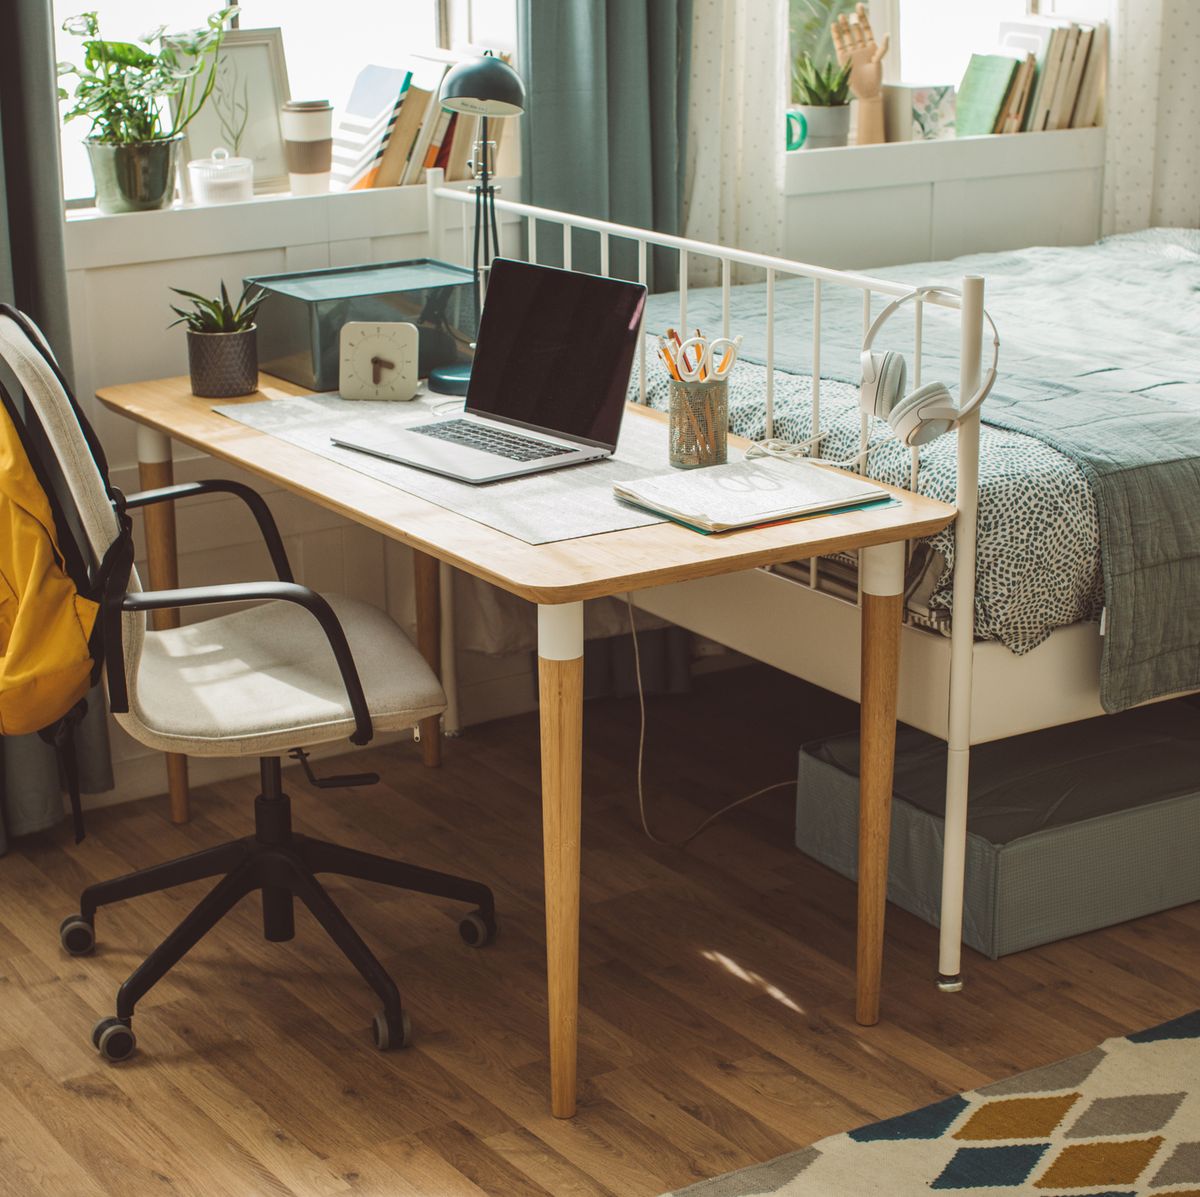 Hidden desk ideas: 10 clever, creative home office desks